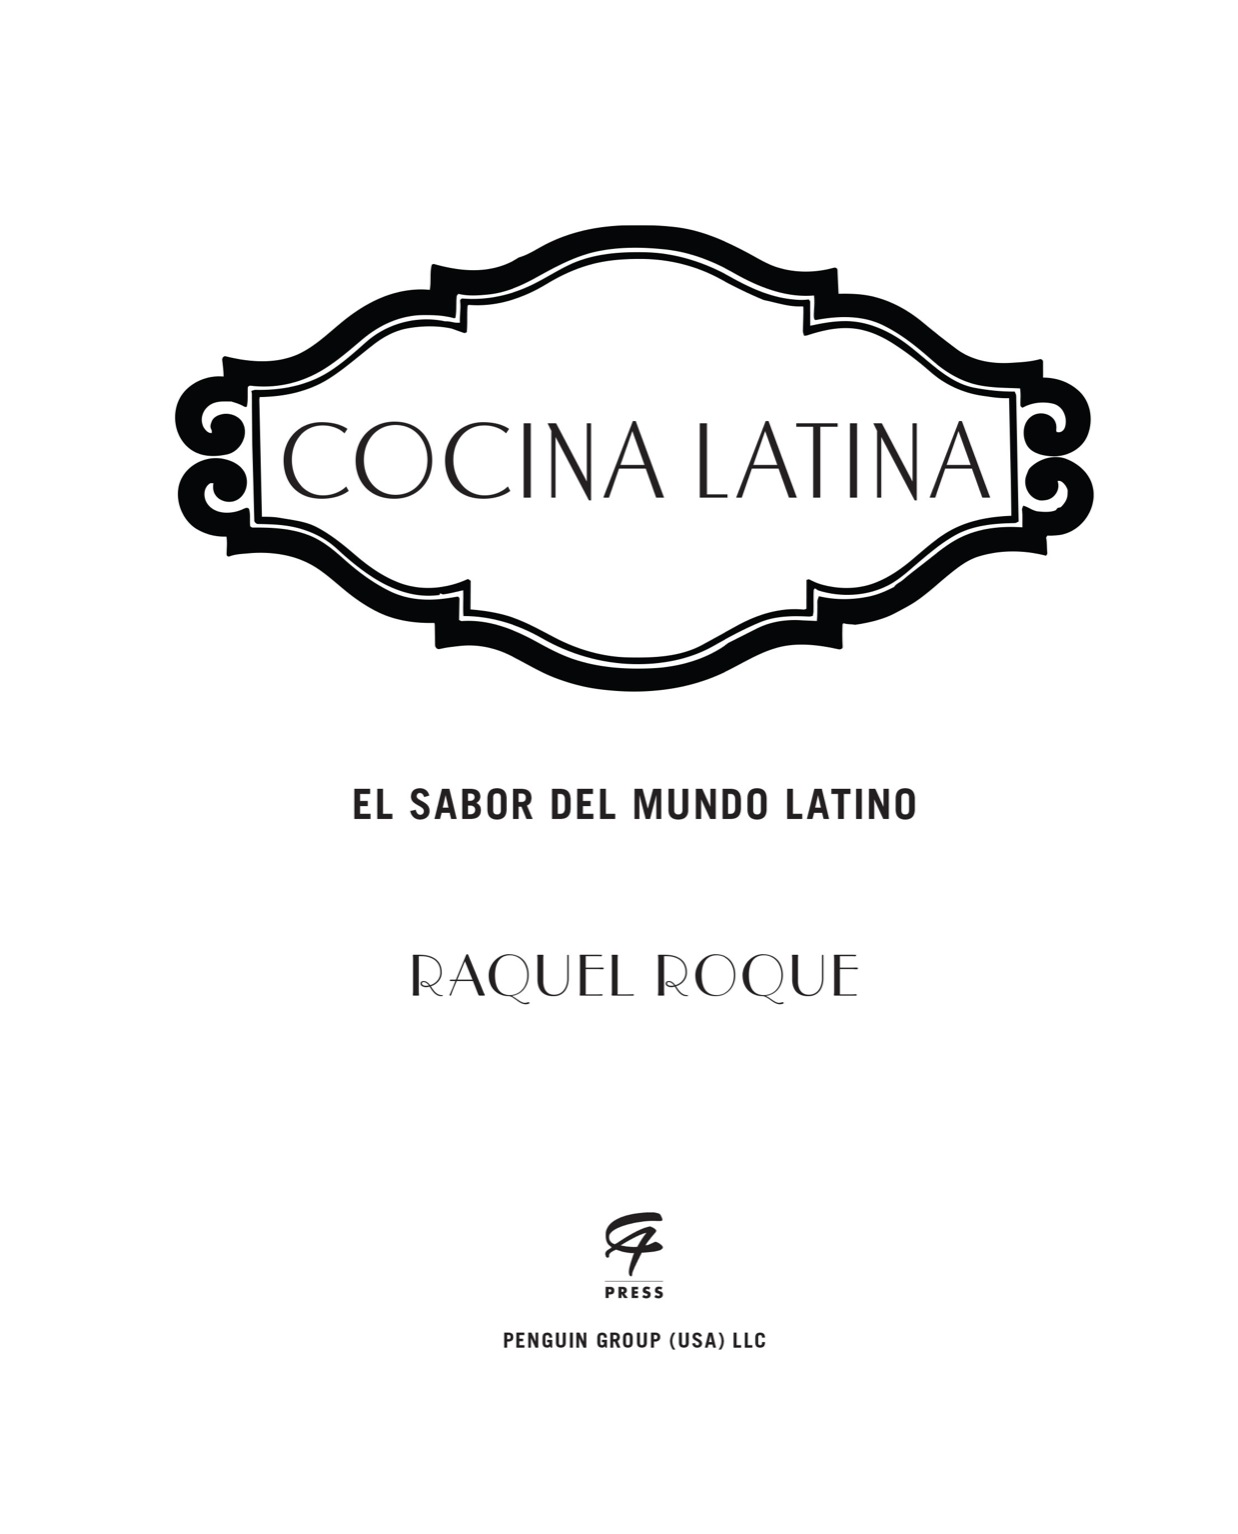 Cocina latina el sabor del mundo latino - image 2